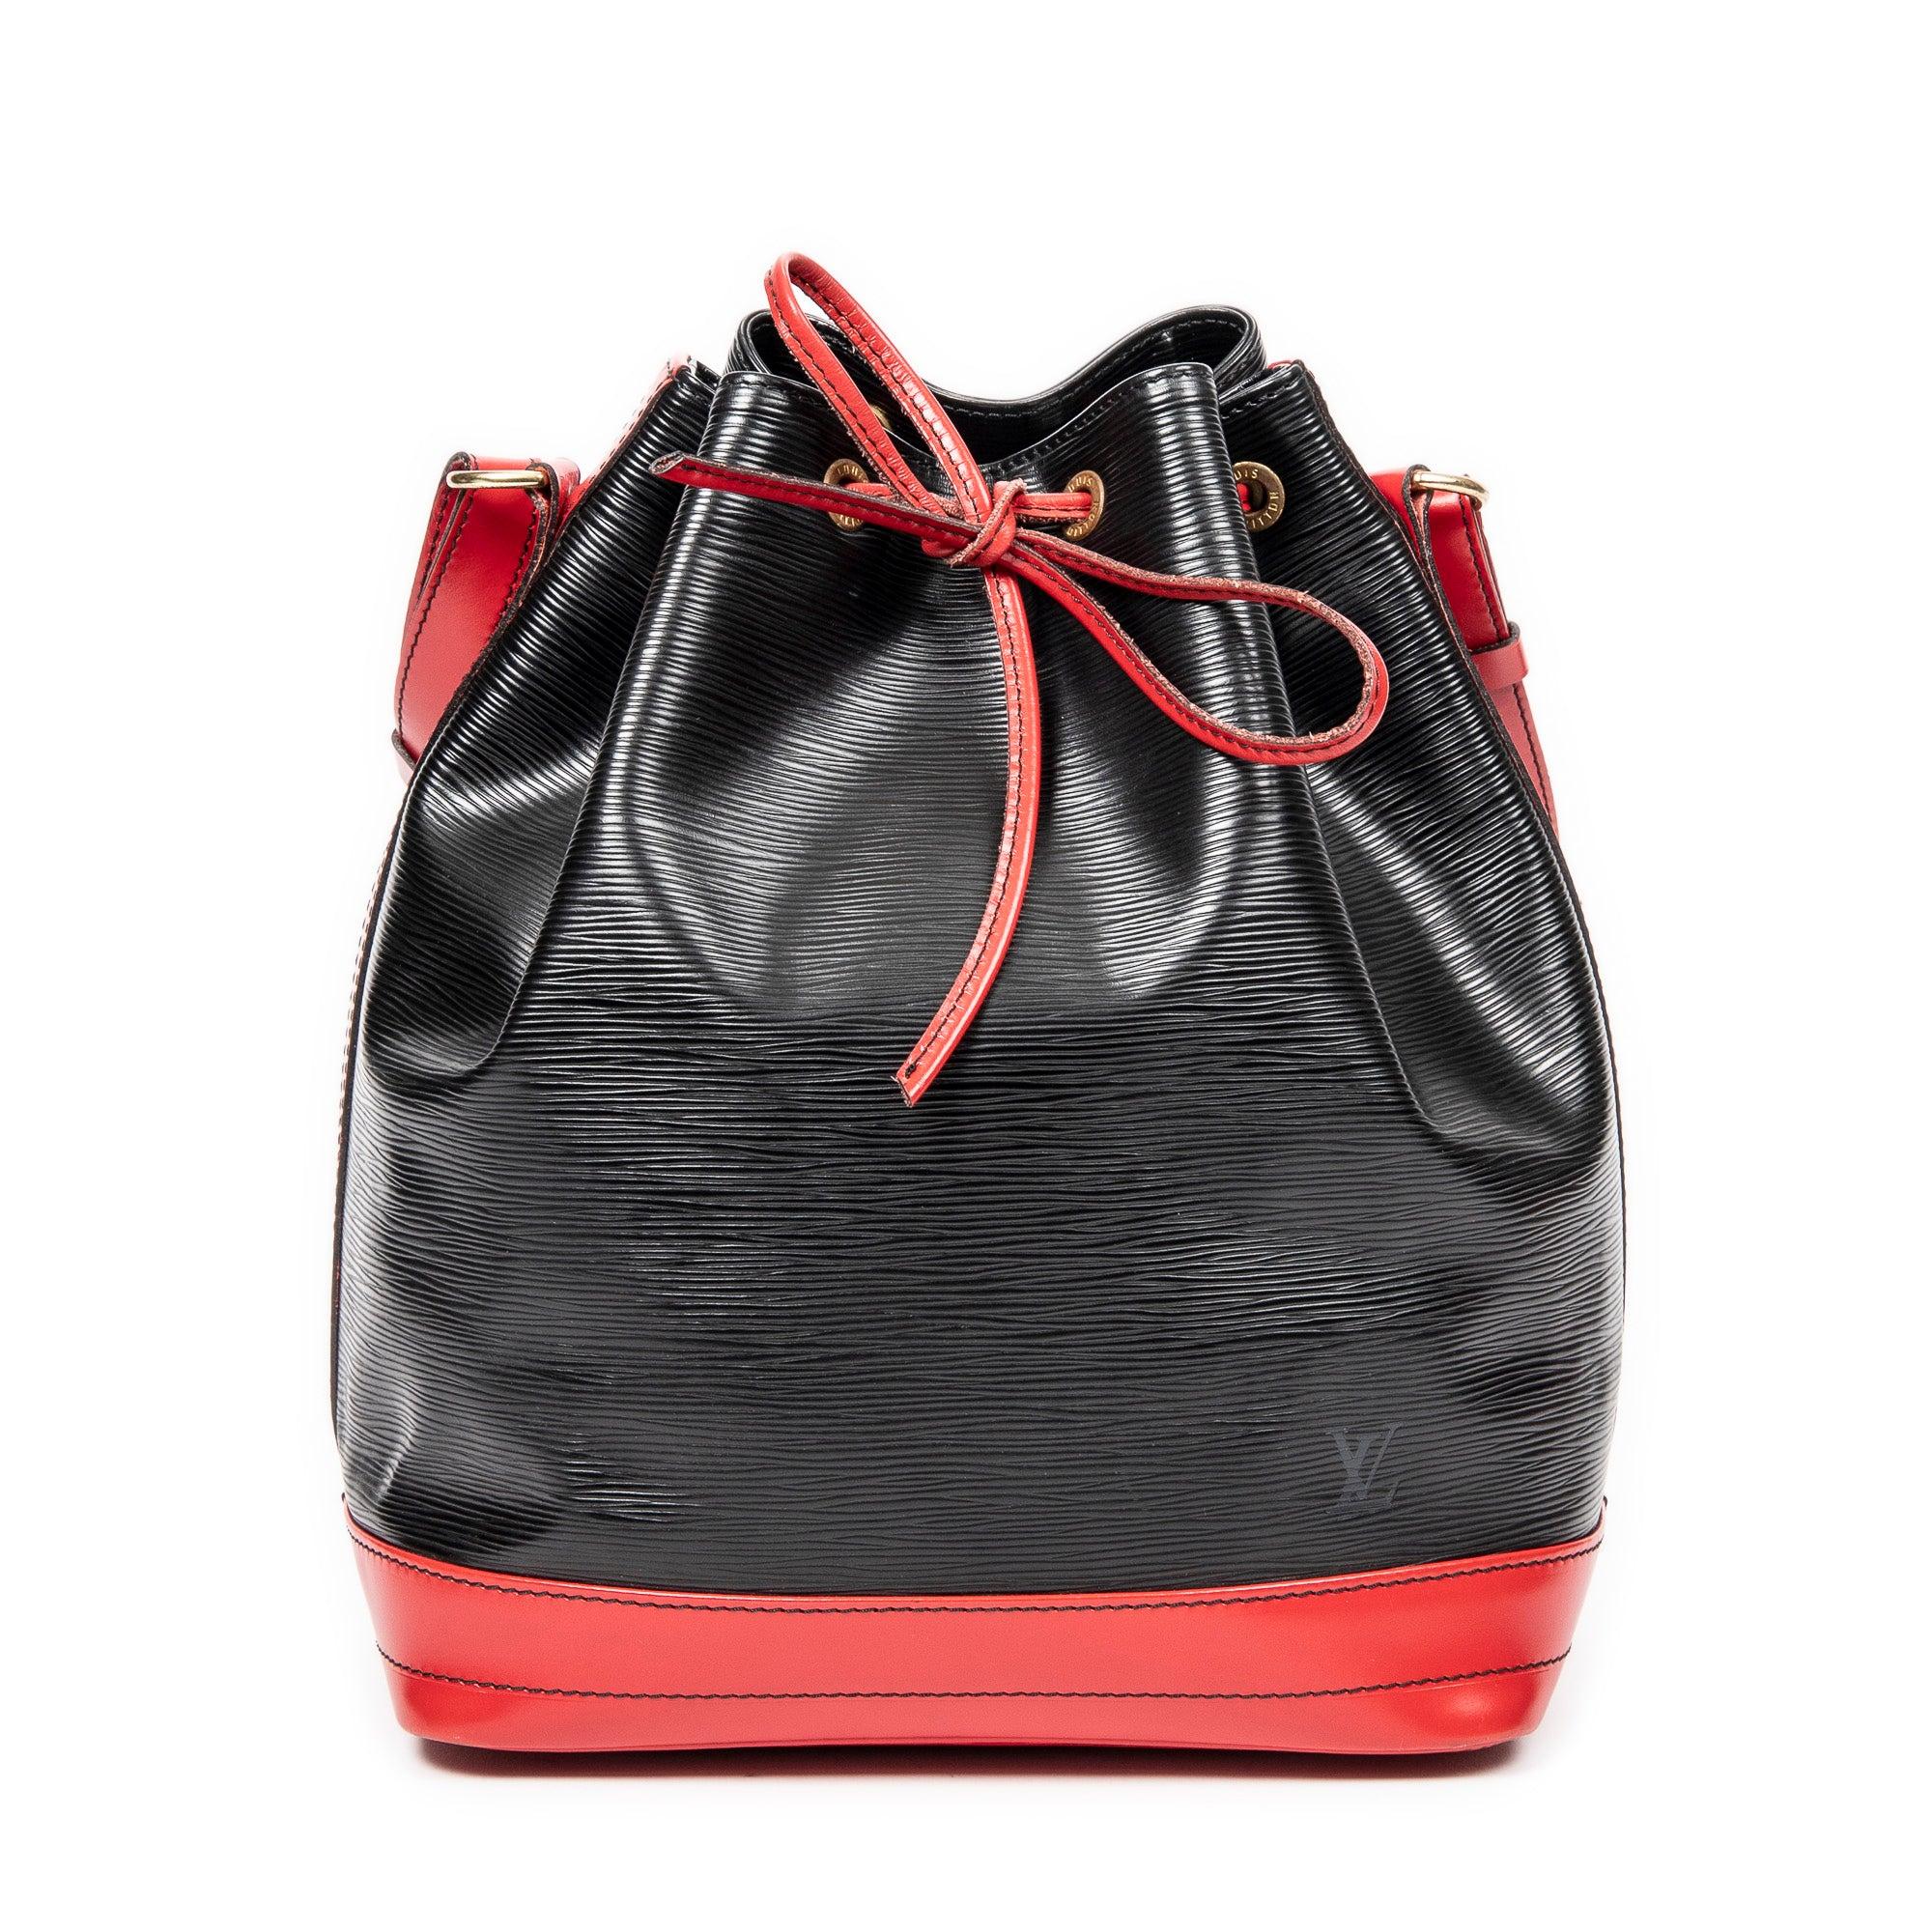 Authentic Louis Vuitton EPI Two-Color Noe Red Black